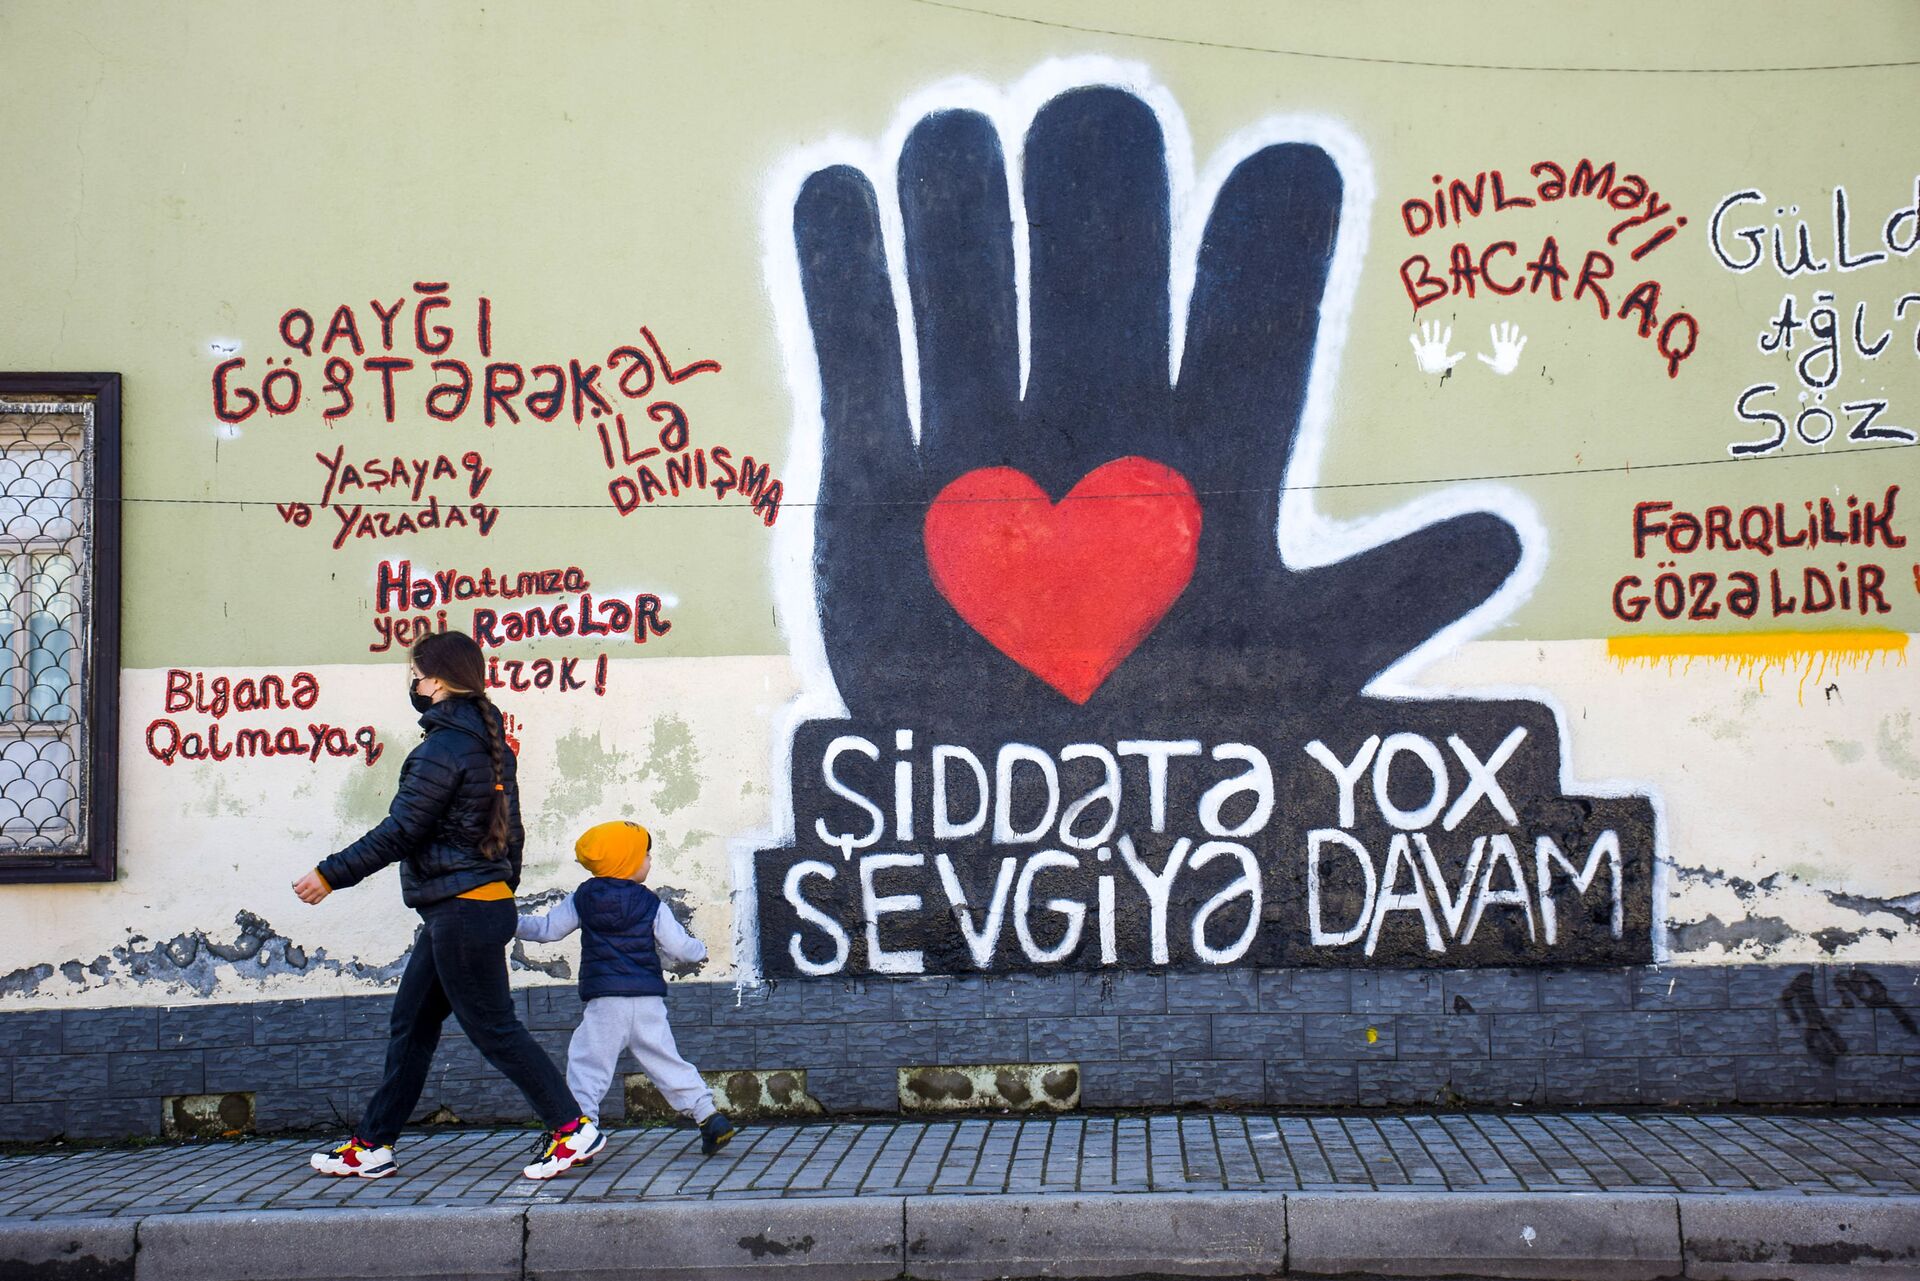 Протестное граффити: молодые художники Шамкира сказали нет буллингу - Sputnik Азербайджан, 1920, 12.03.2021